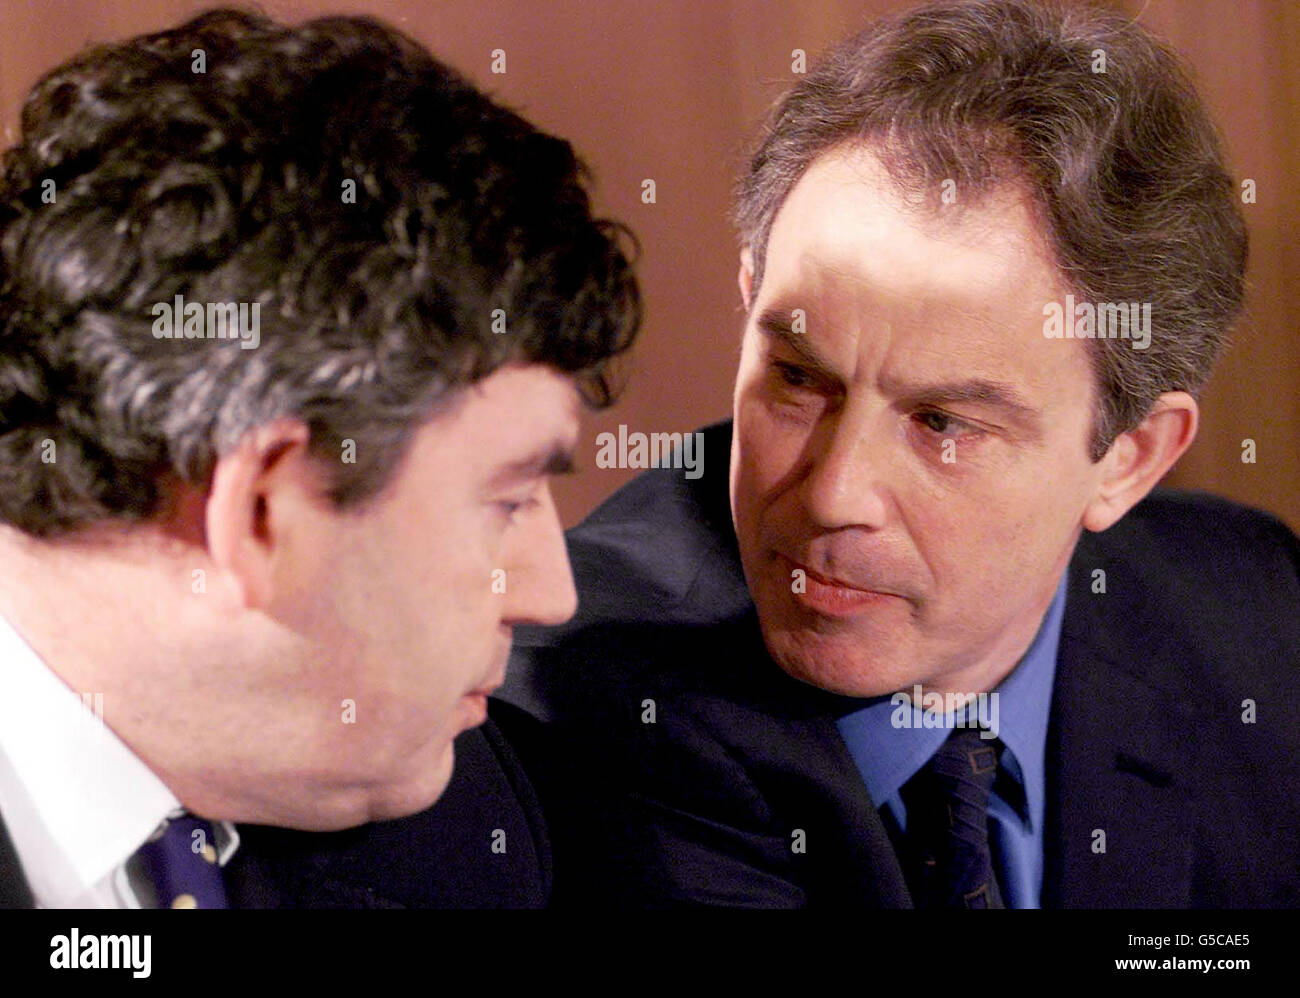 Il primo ministro britannico Tony Blair (destra) parla con il cancelliere Gordon Brown durante la presentazione dei piani per i conti di risparmio per i neonati che potrebbero accumulare più di 3,000 anni all'età di 18 anni per coloro che sono nati in famiglie a basso reddito. * il fondo fiduciario del bambino - soprannominato 'le obbligazioni del bambino' dai mezzi di comunicazione fanno parte dell'azionamento in corso del governo per sradicare la povertà del bambino - vedrebbe lo stato dare ai bambini più poveri un fondo fino a 500 alla nascita. Il fondo sarebbe completato con ulteriori pagamenti all'età di cinque, 11 e 16 anni per dare una dotazione massima di 800. Foto Stock